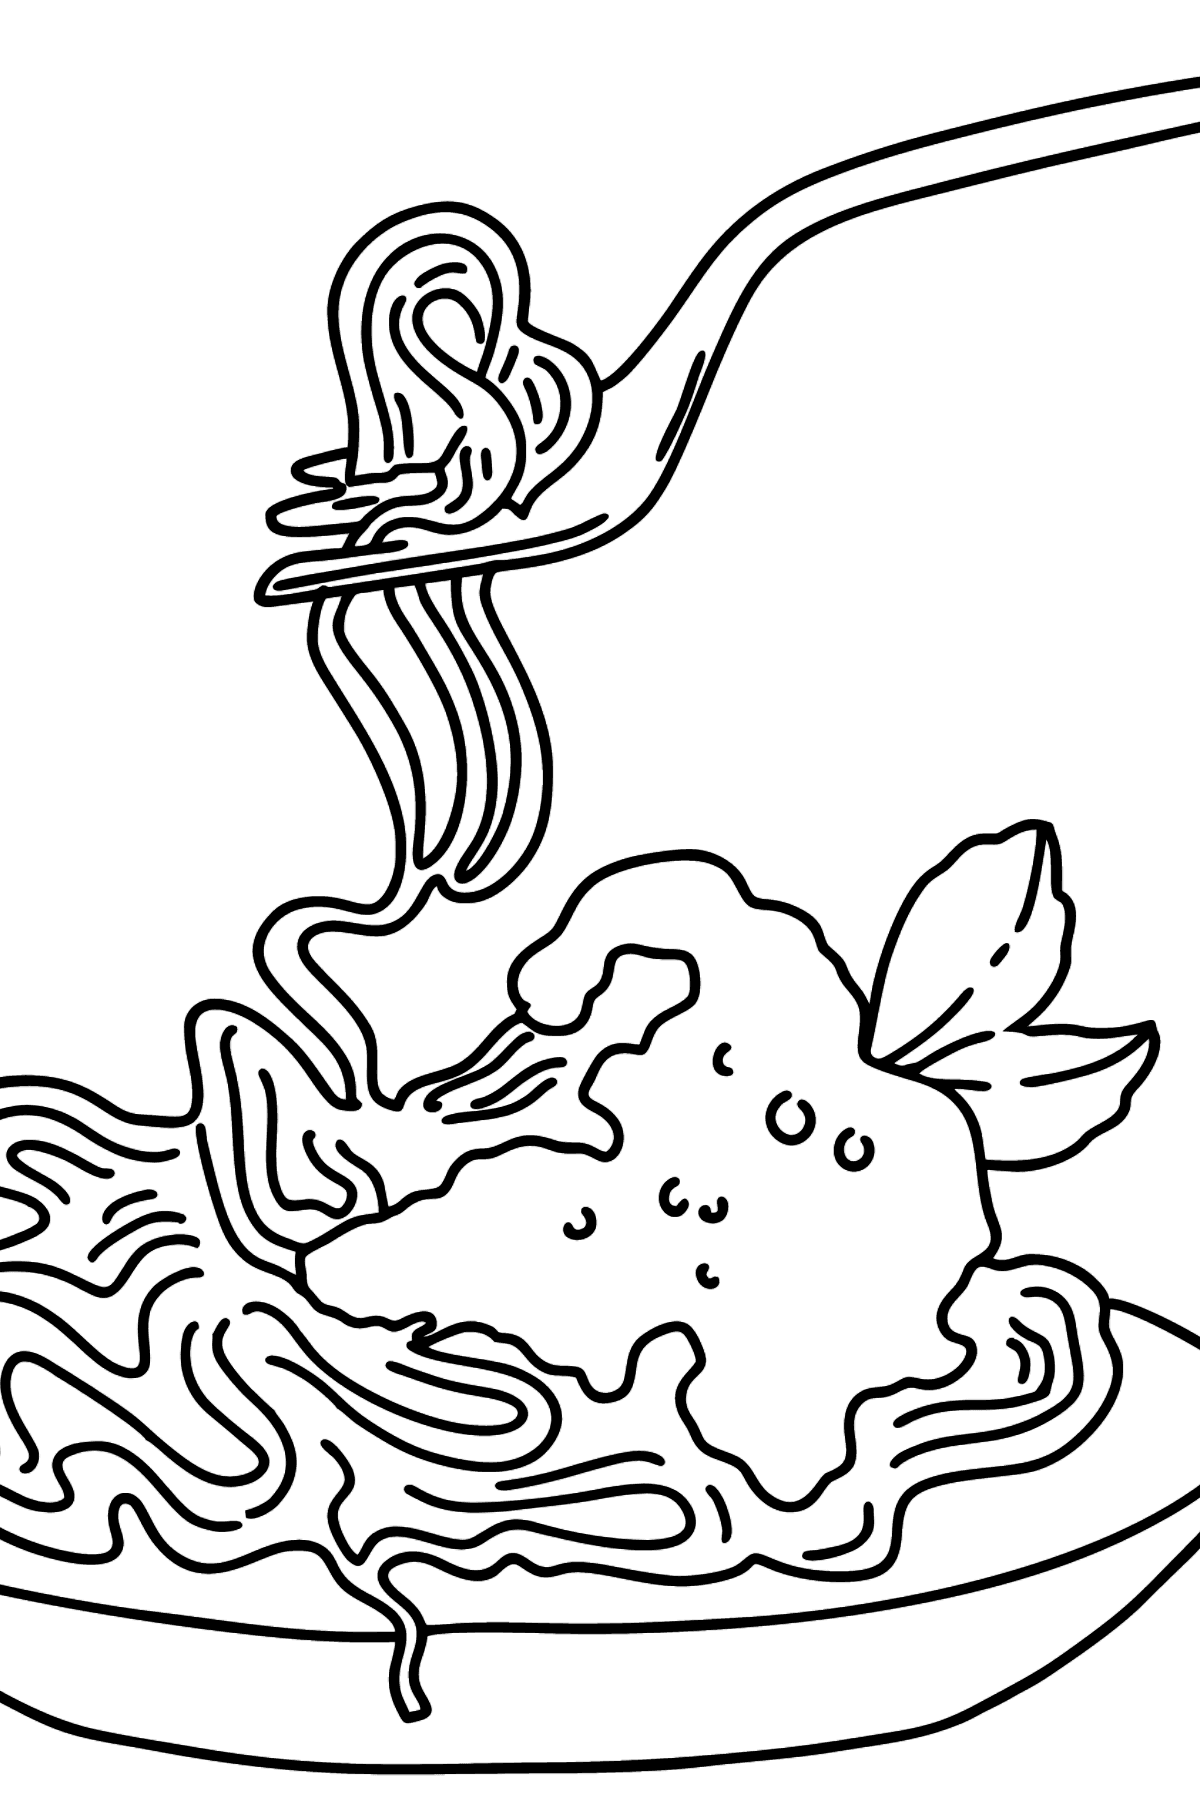 Desenho para colorir de Espaguete com Molho de Tomate - Imagens para Colorir para Crianças